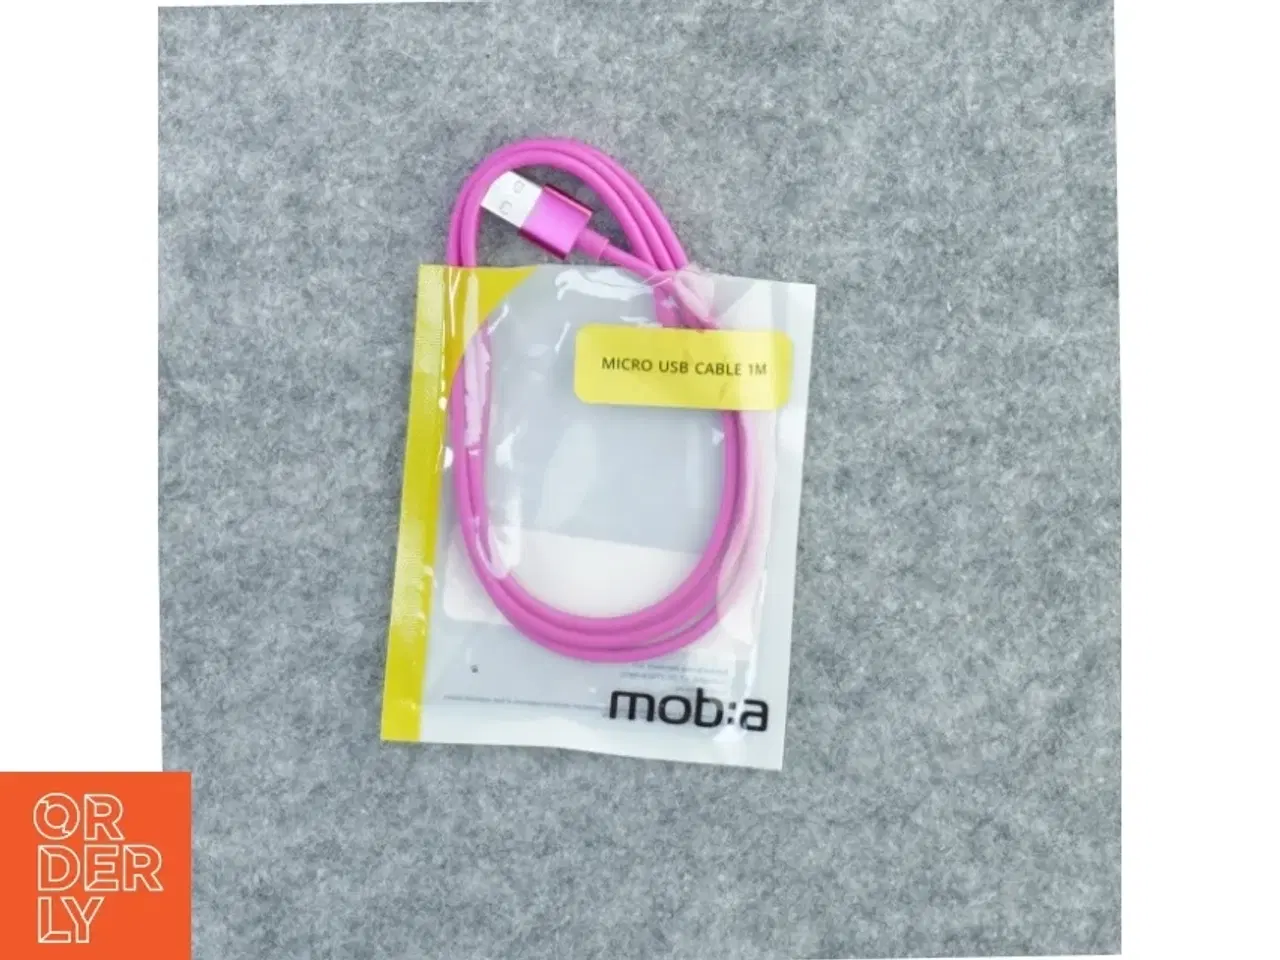 Billede 1 - Mikro usb cable fra Moba (str. En meter)